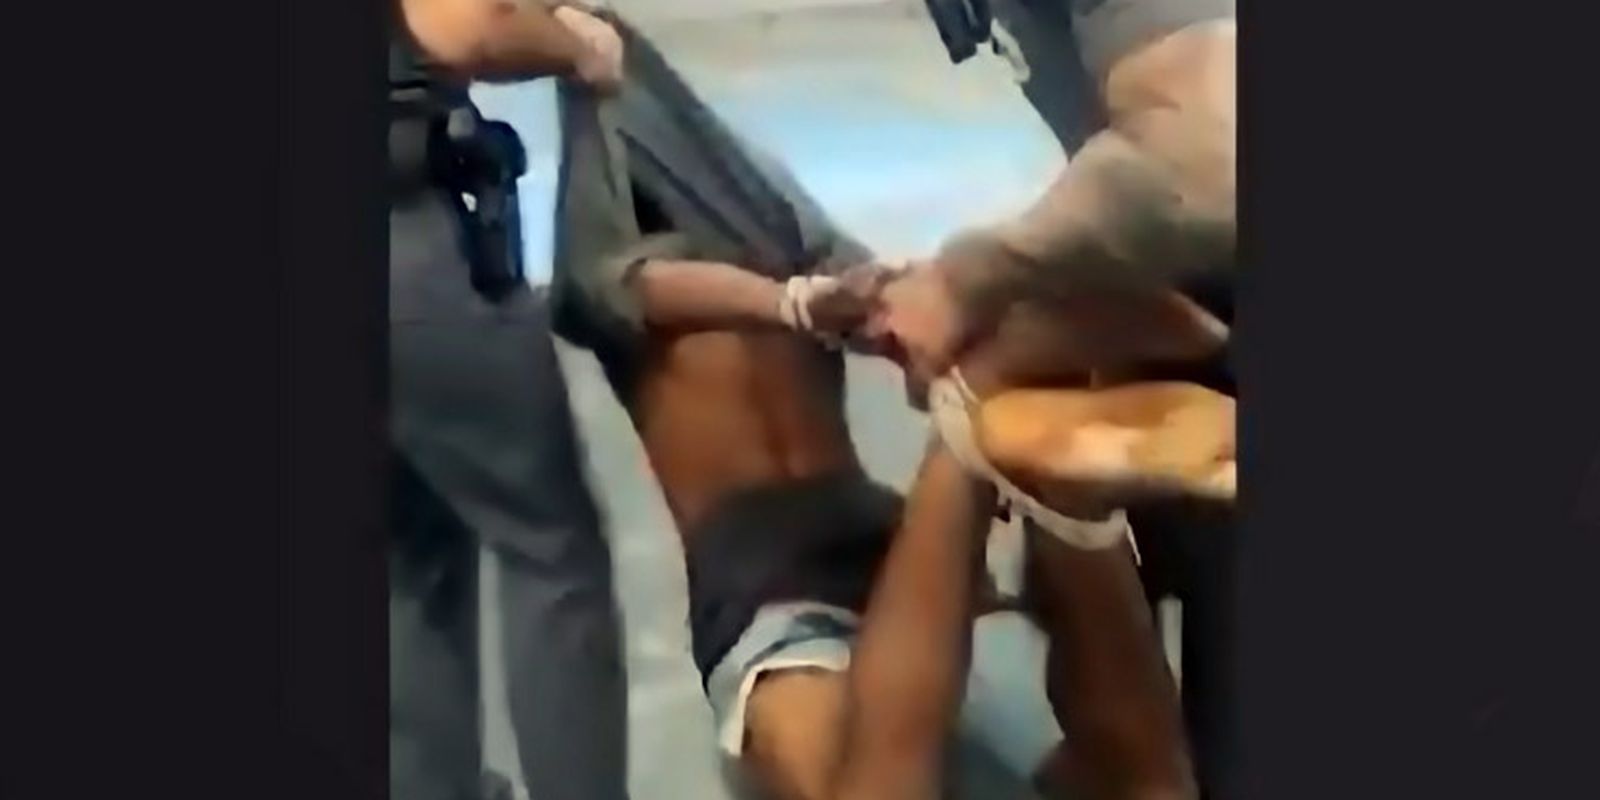 Justiça descarta tortura em caso de homem amarrado por cordas